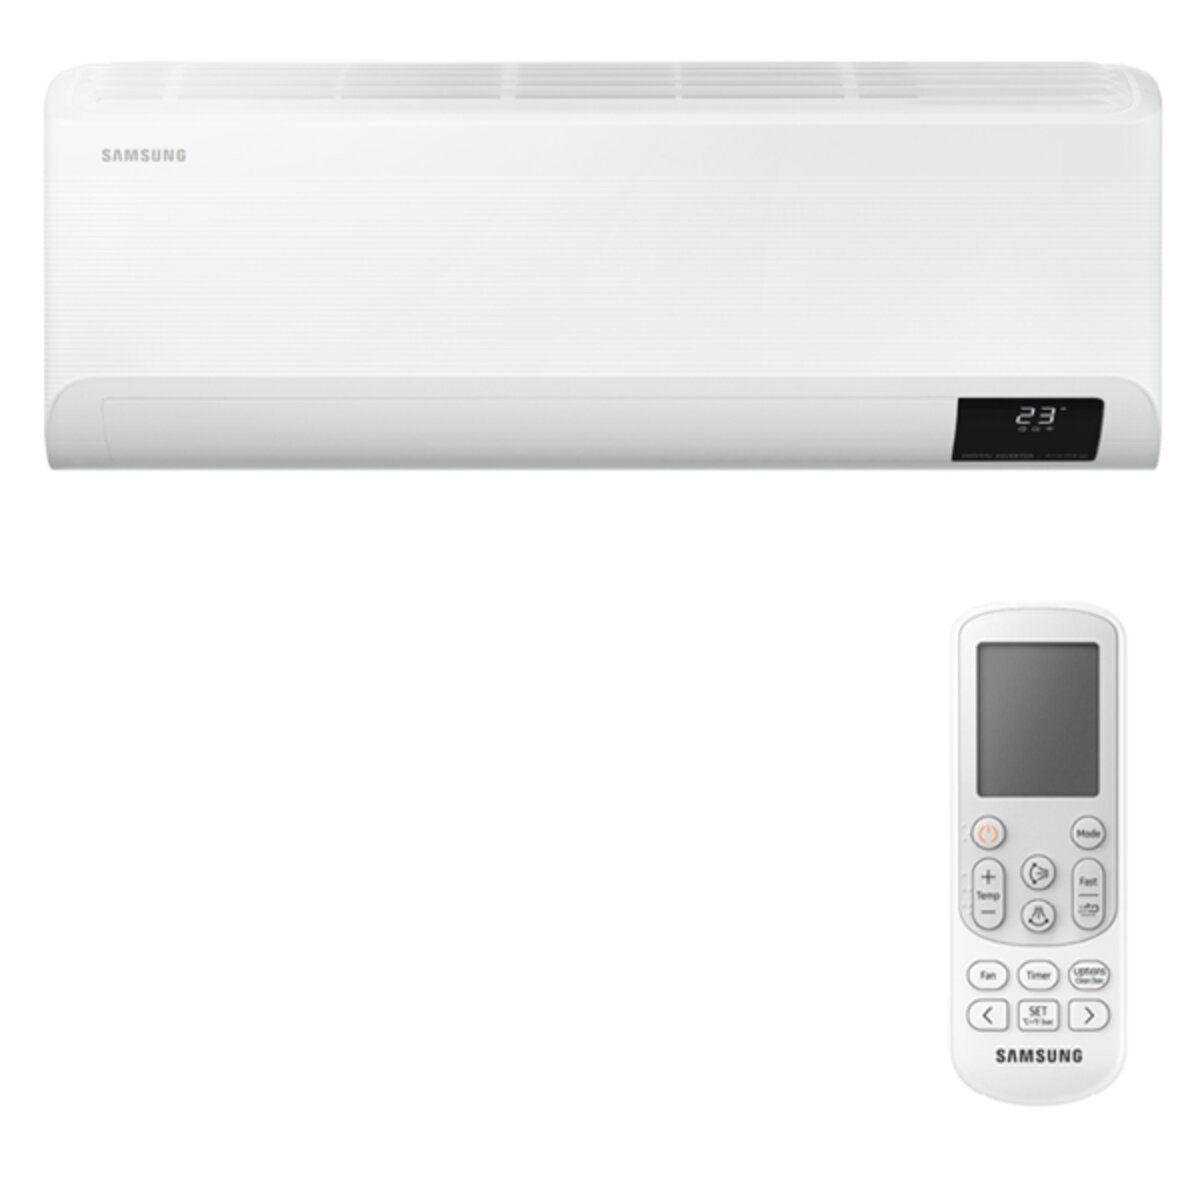 Samsung Cebu WLAN Klimaanlage Penta Split 9000 + 9000 + 9000 + 12000 + 12000 BTU Wechselrichter A++ WLAN Außengerät 10,0 kW